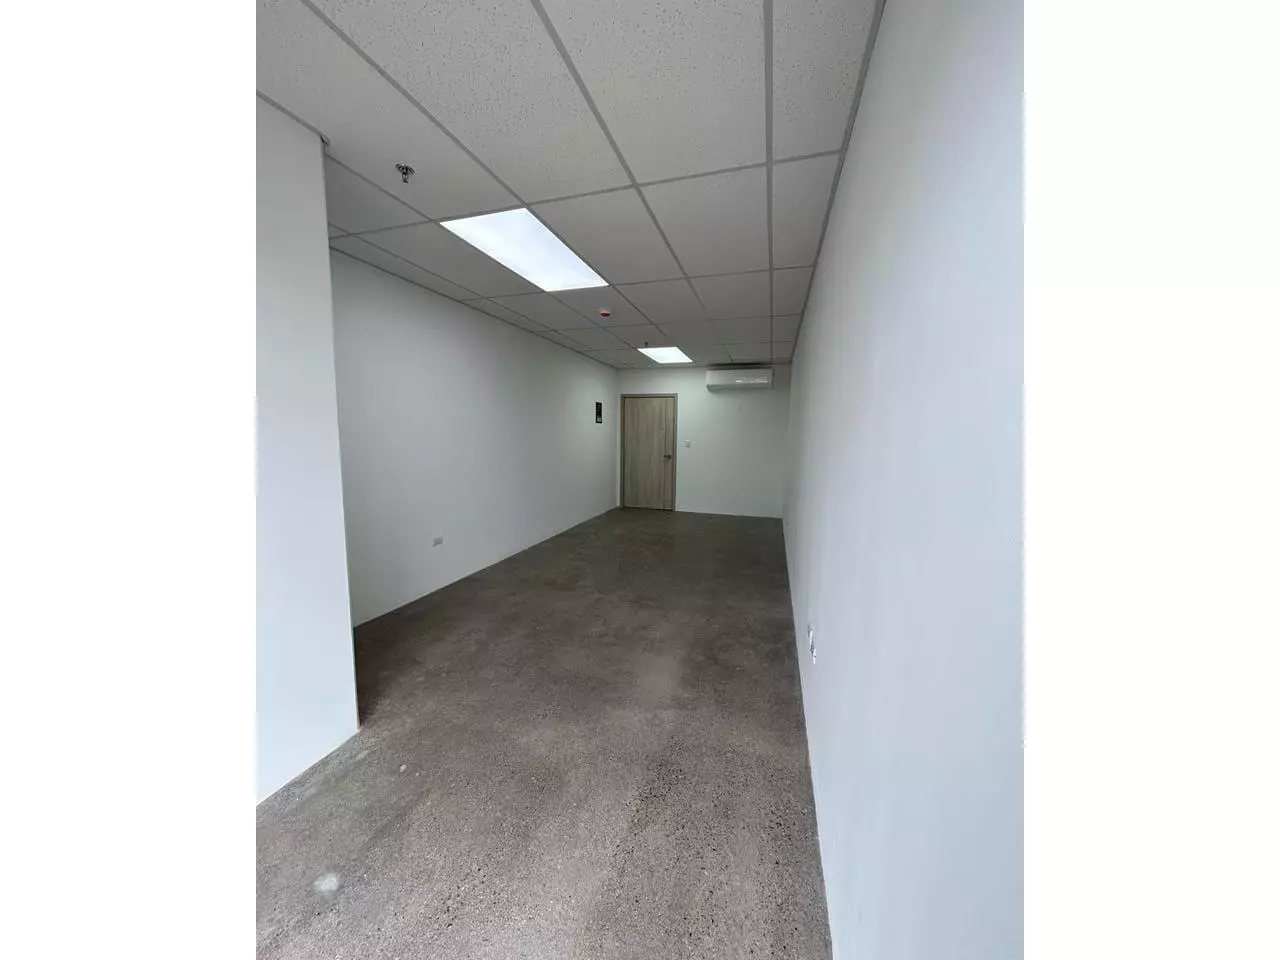 Oficina en alquiler con paredes color blanco y piso de cemento pulido.